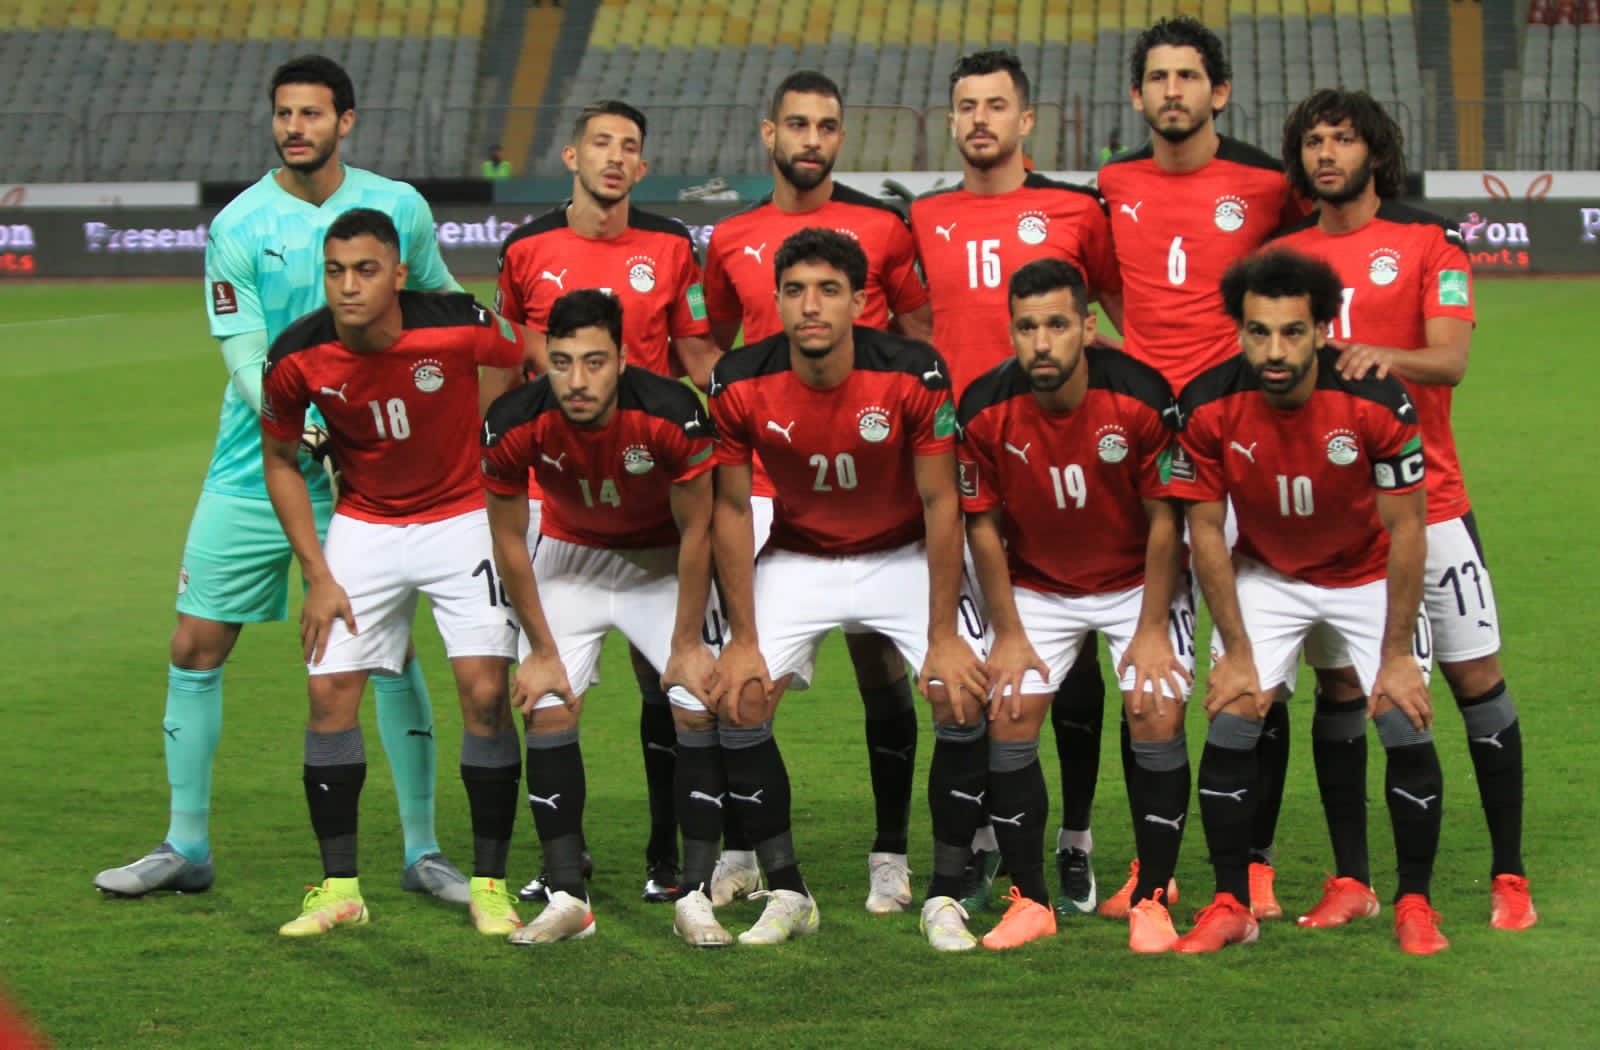 بالحسابات| الفريق الذي سيواجه مصر لتصل لكأس العالم قطر 2022؟